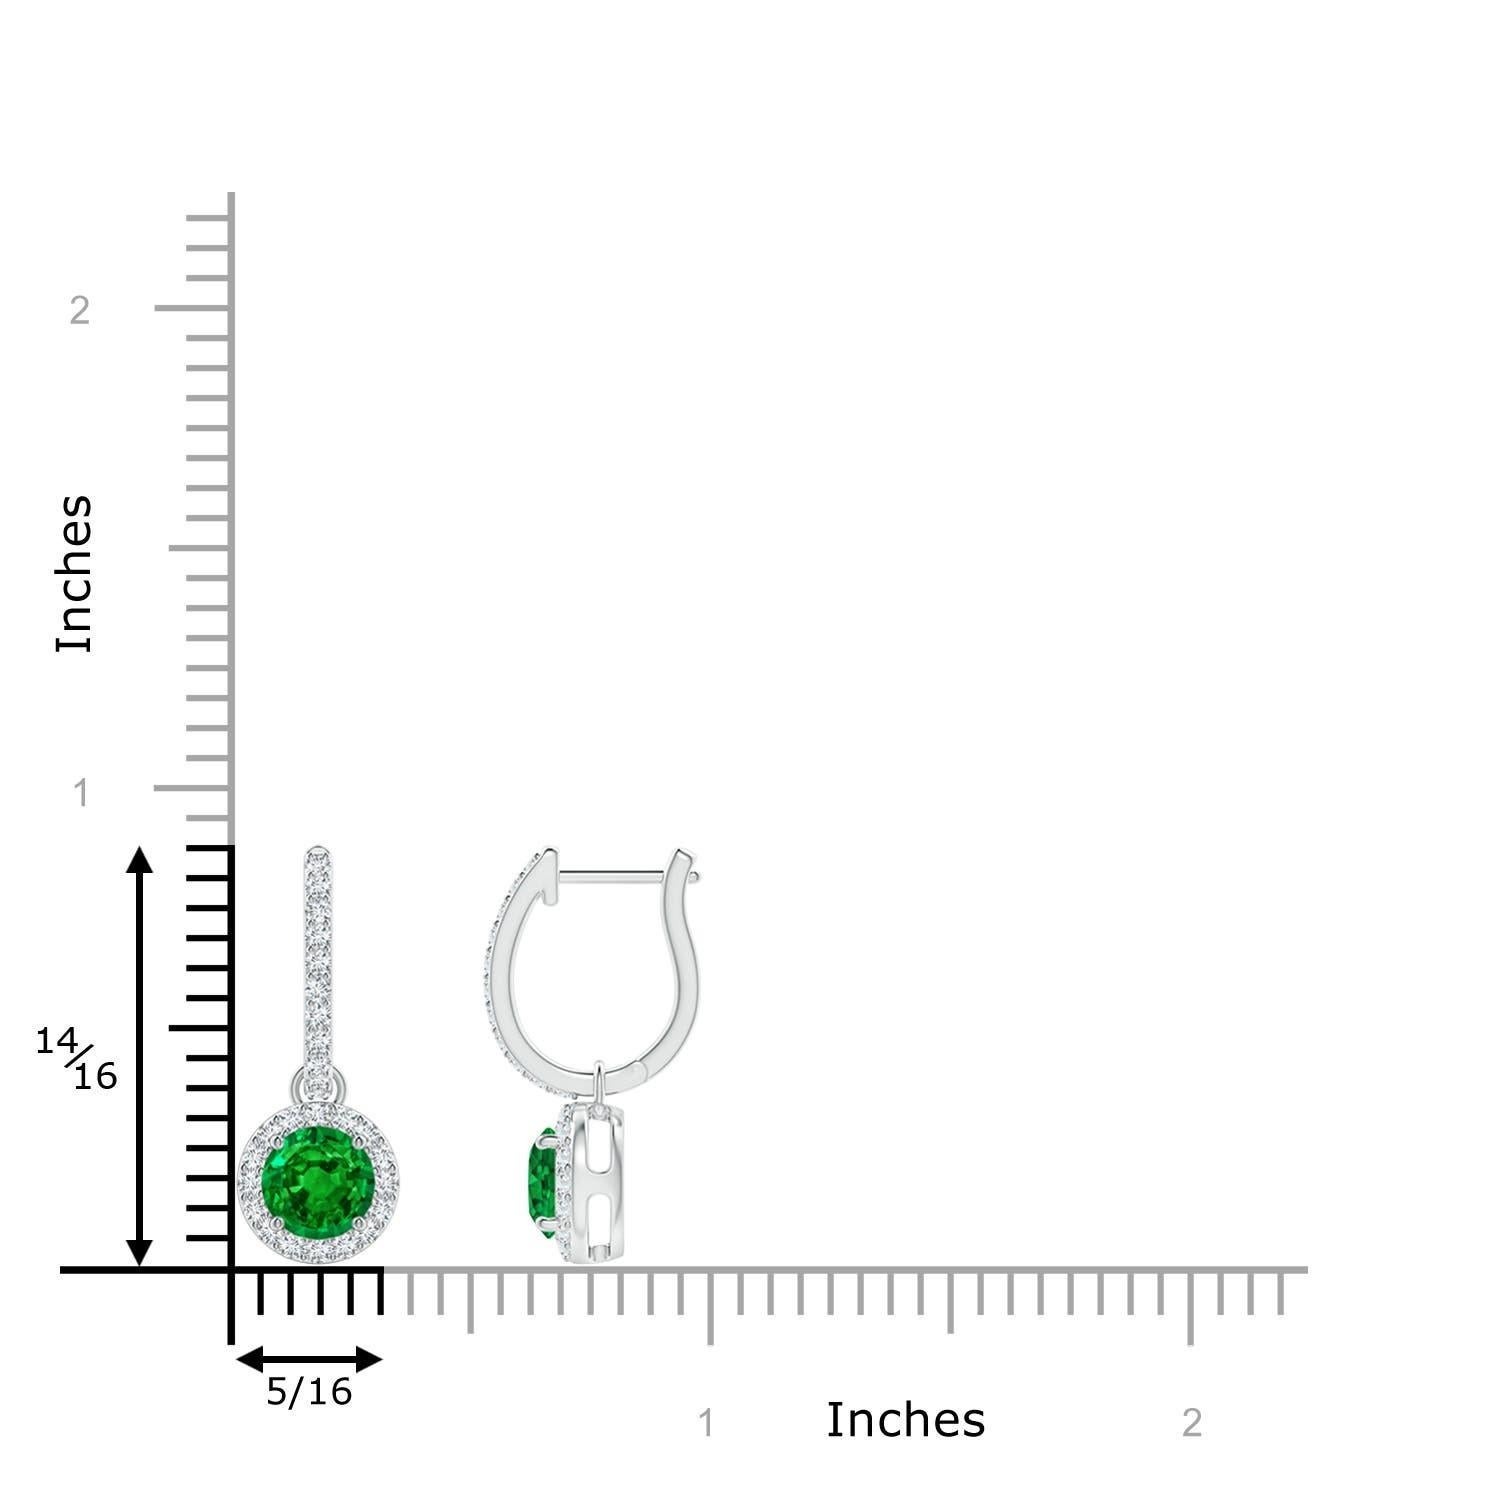 Eingebettet in einen schimmernden Halo aus runden Diamanten sind runde, sattgrüne Smaragde in Zackenfassung. Die diamantenen Akzente auf dem Ring verleihen diesen aus Platin gefertigten Smaragd-Ohrringen einen zusätzlichen Hauch von Eleganz.
Der